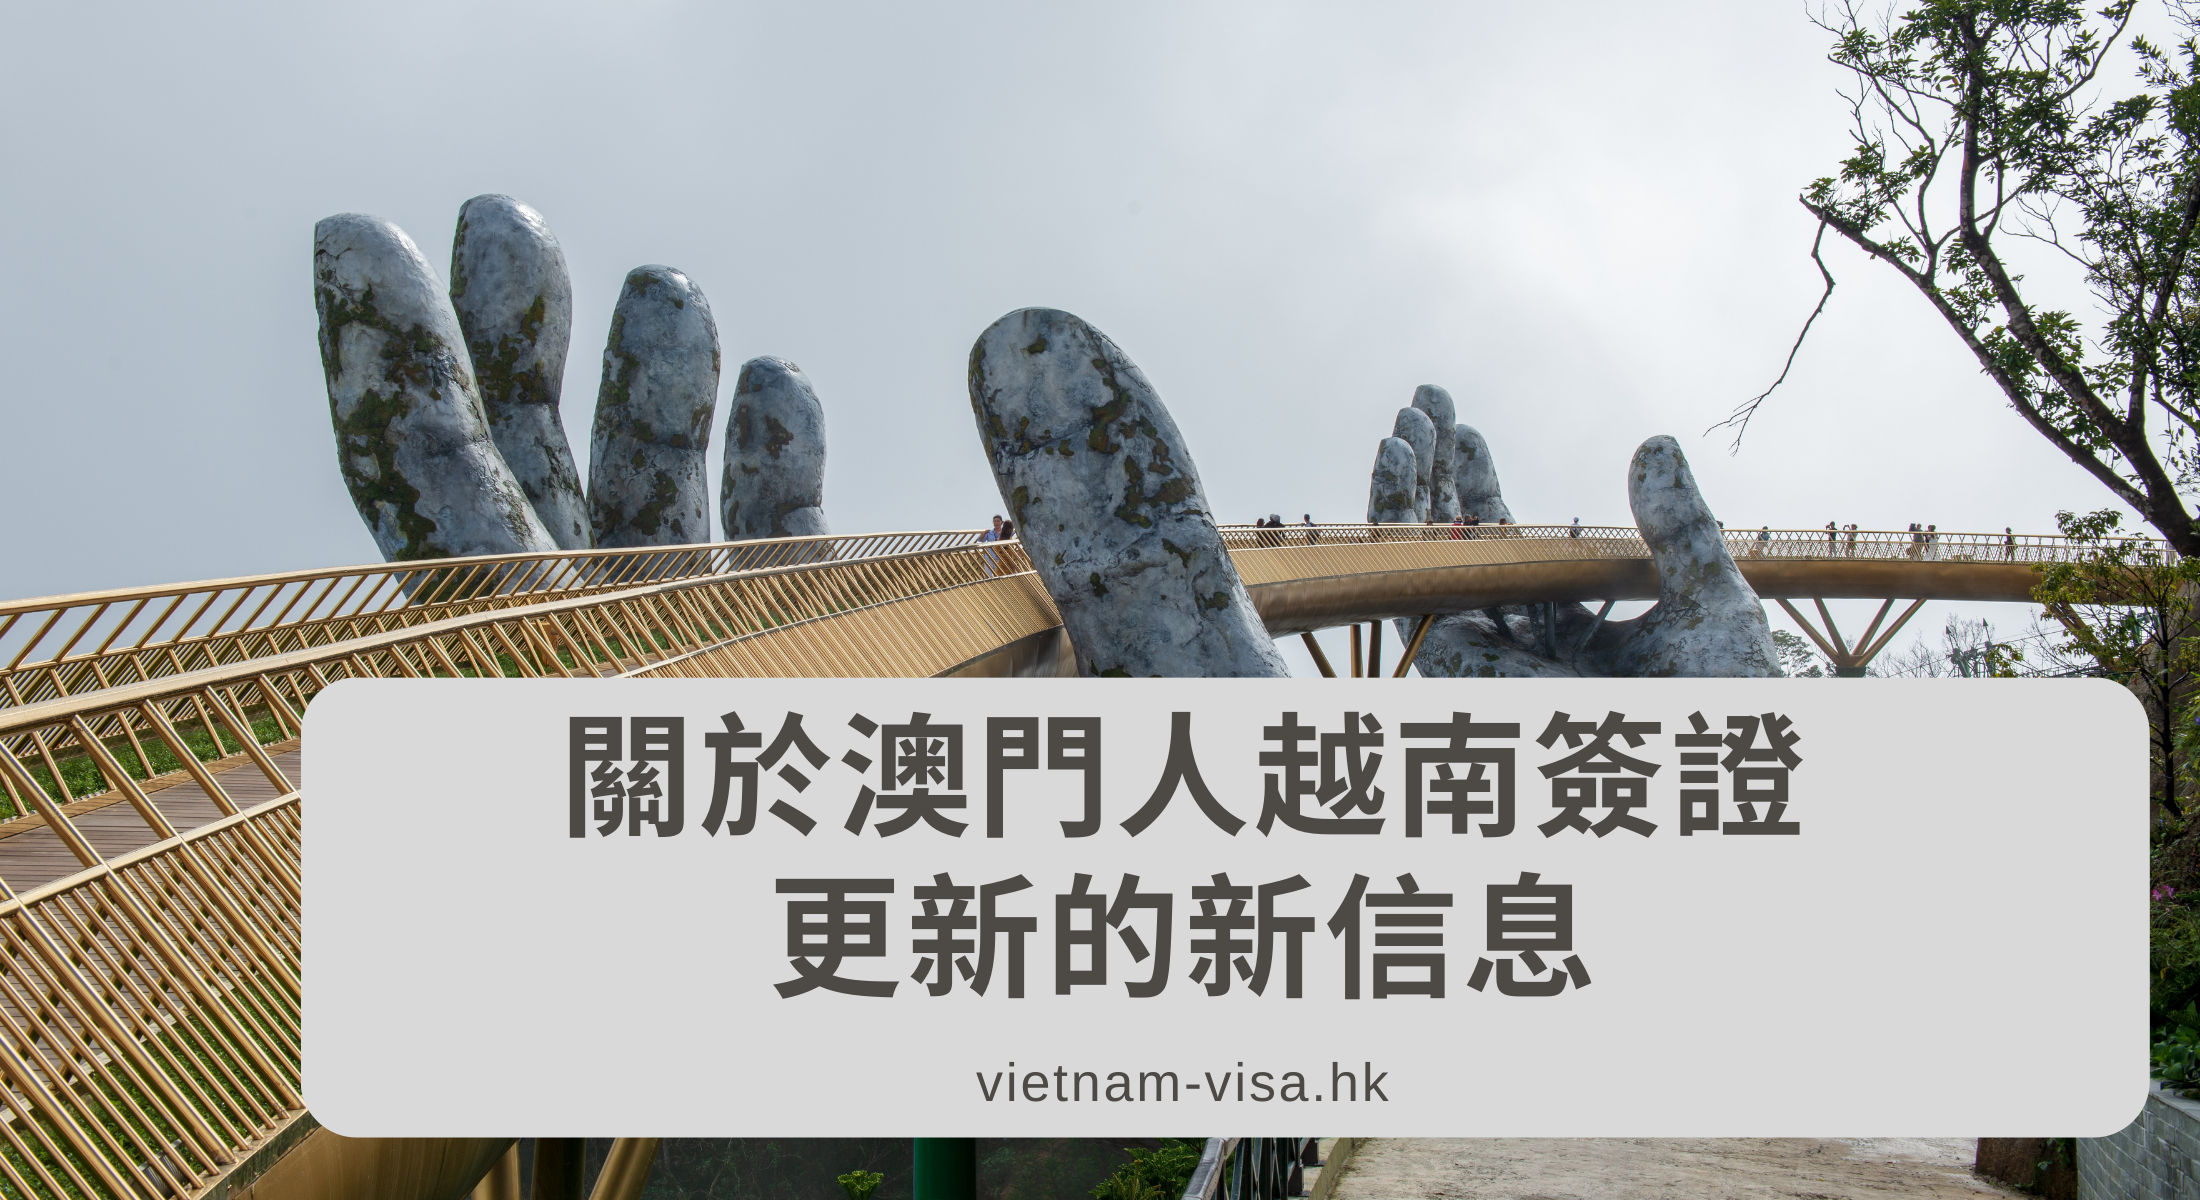 關於澳門人越南簽證更新的新信息